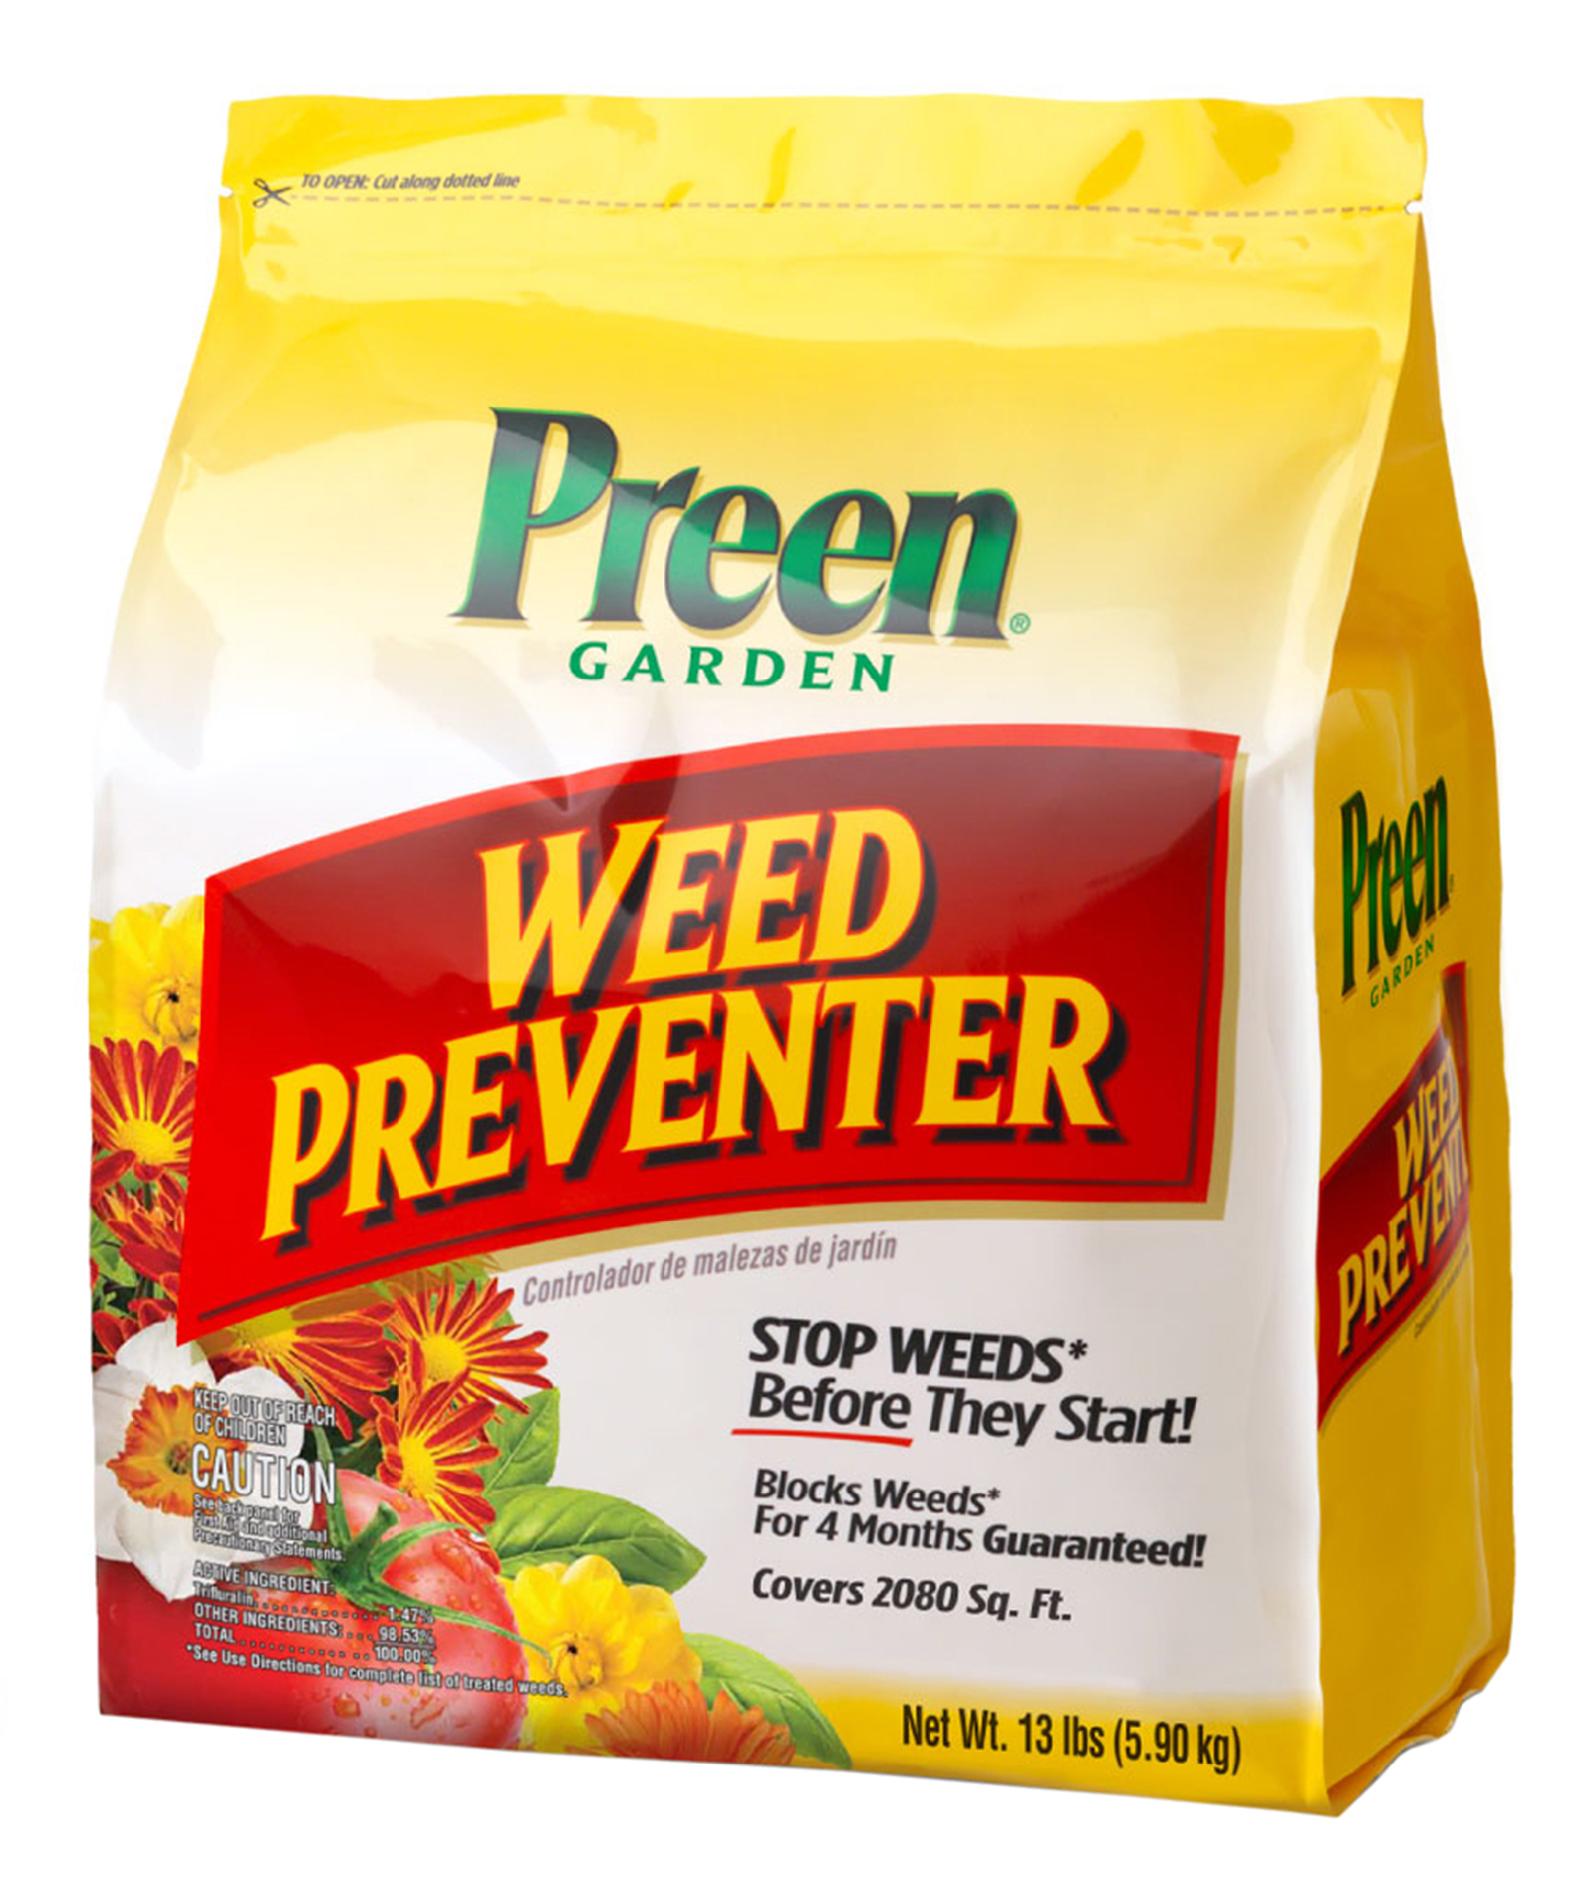 Preen G81 2463798 13 lb. bag Garden Weed Preventer yellow